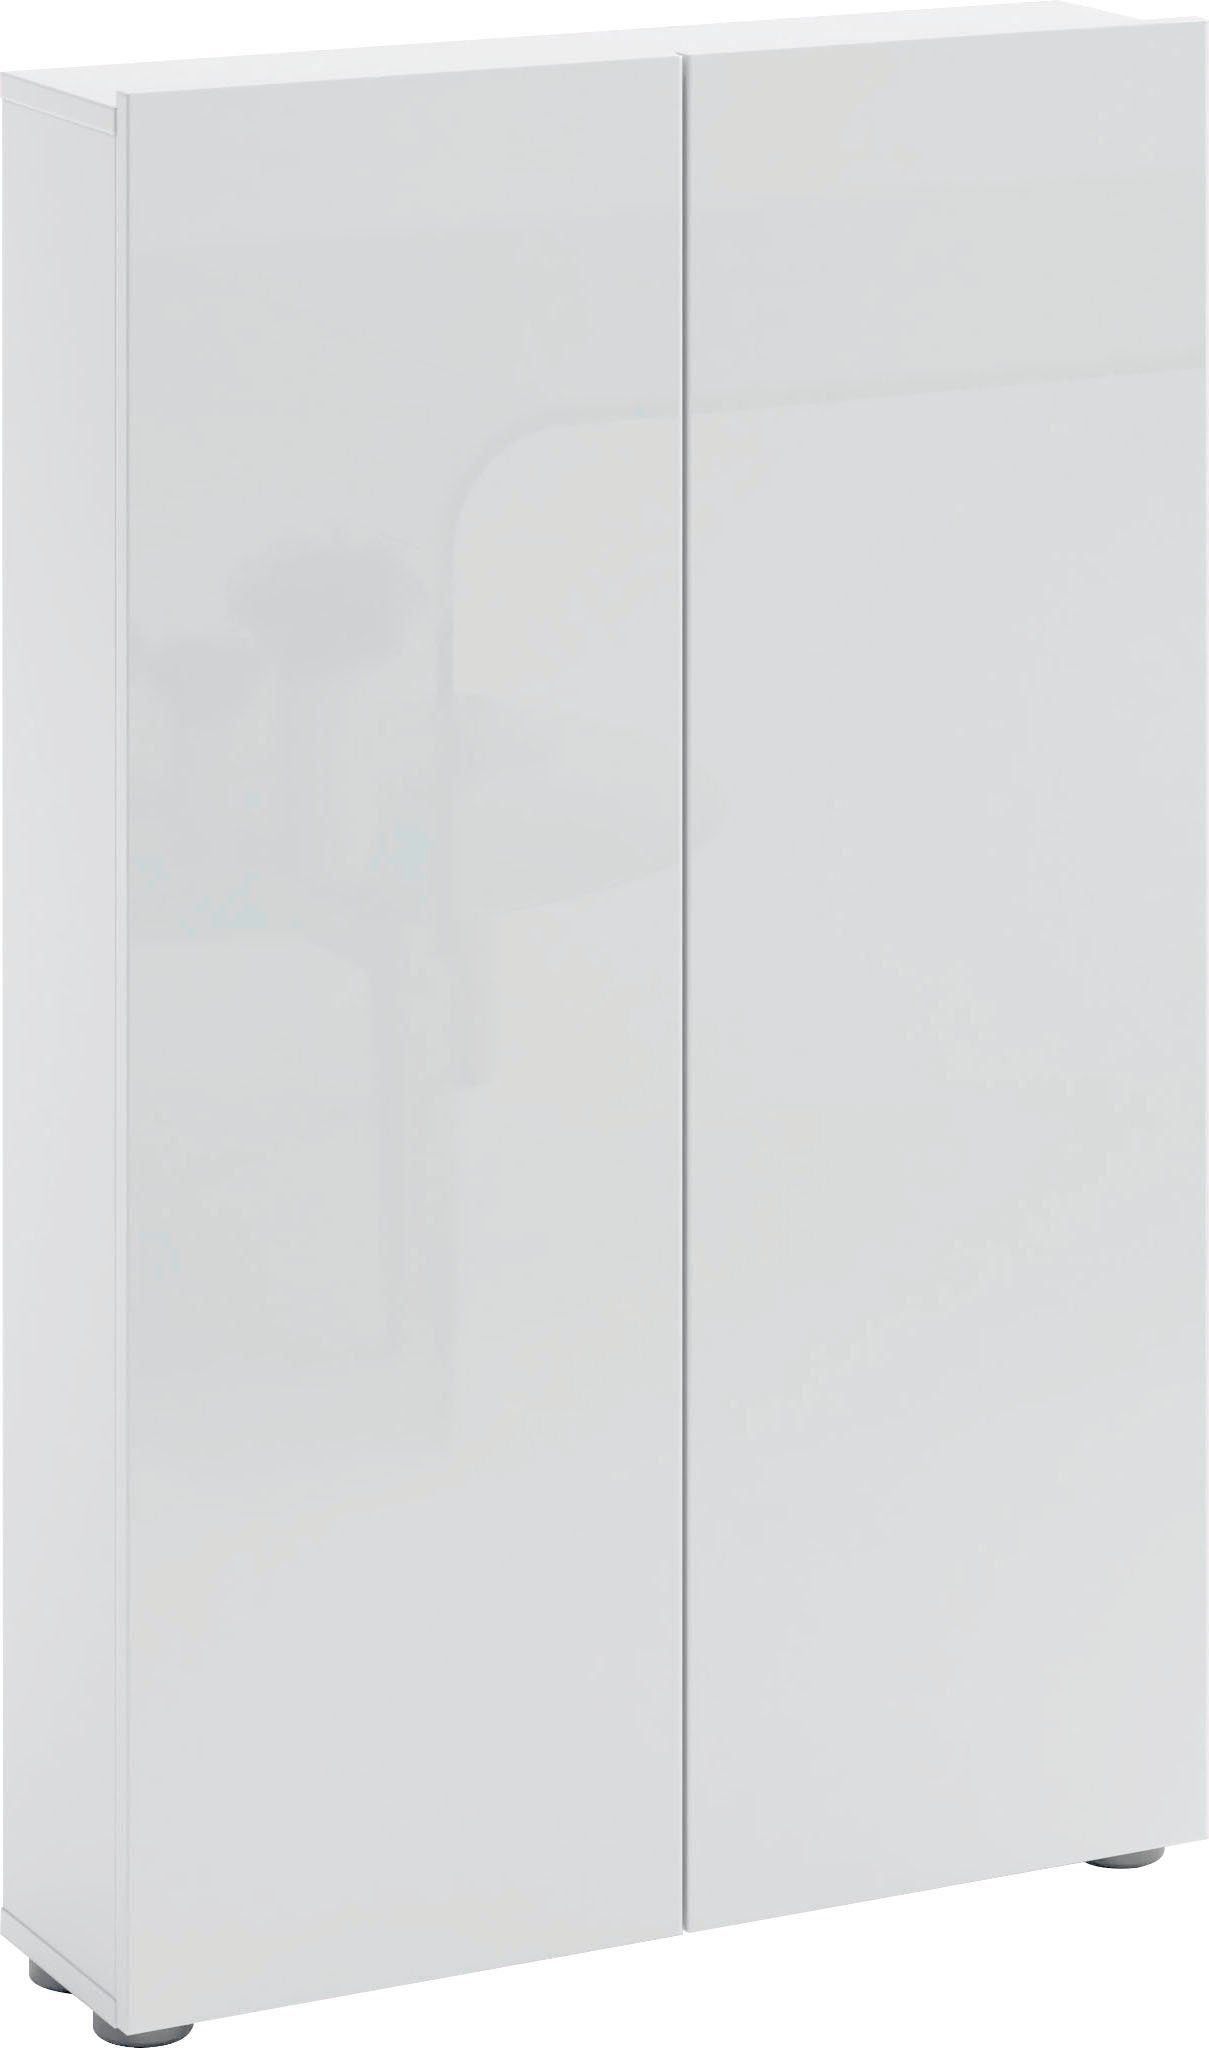 möbelando Schuhschrank SPAZIO in weiß mit 2 Türen und 6 Fächern.  Abmessungen (BxHxT) 73,4x115x18,6 cm